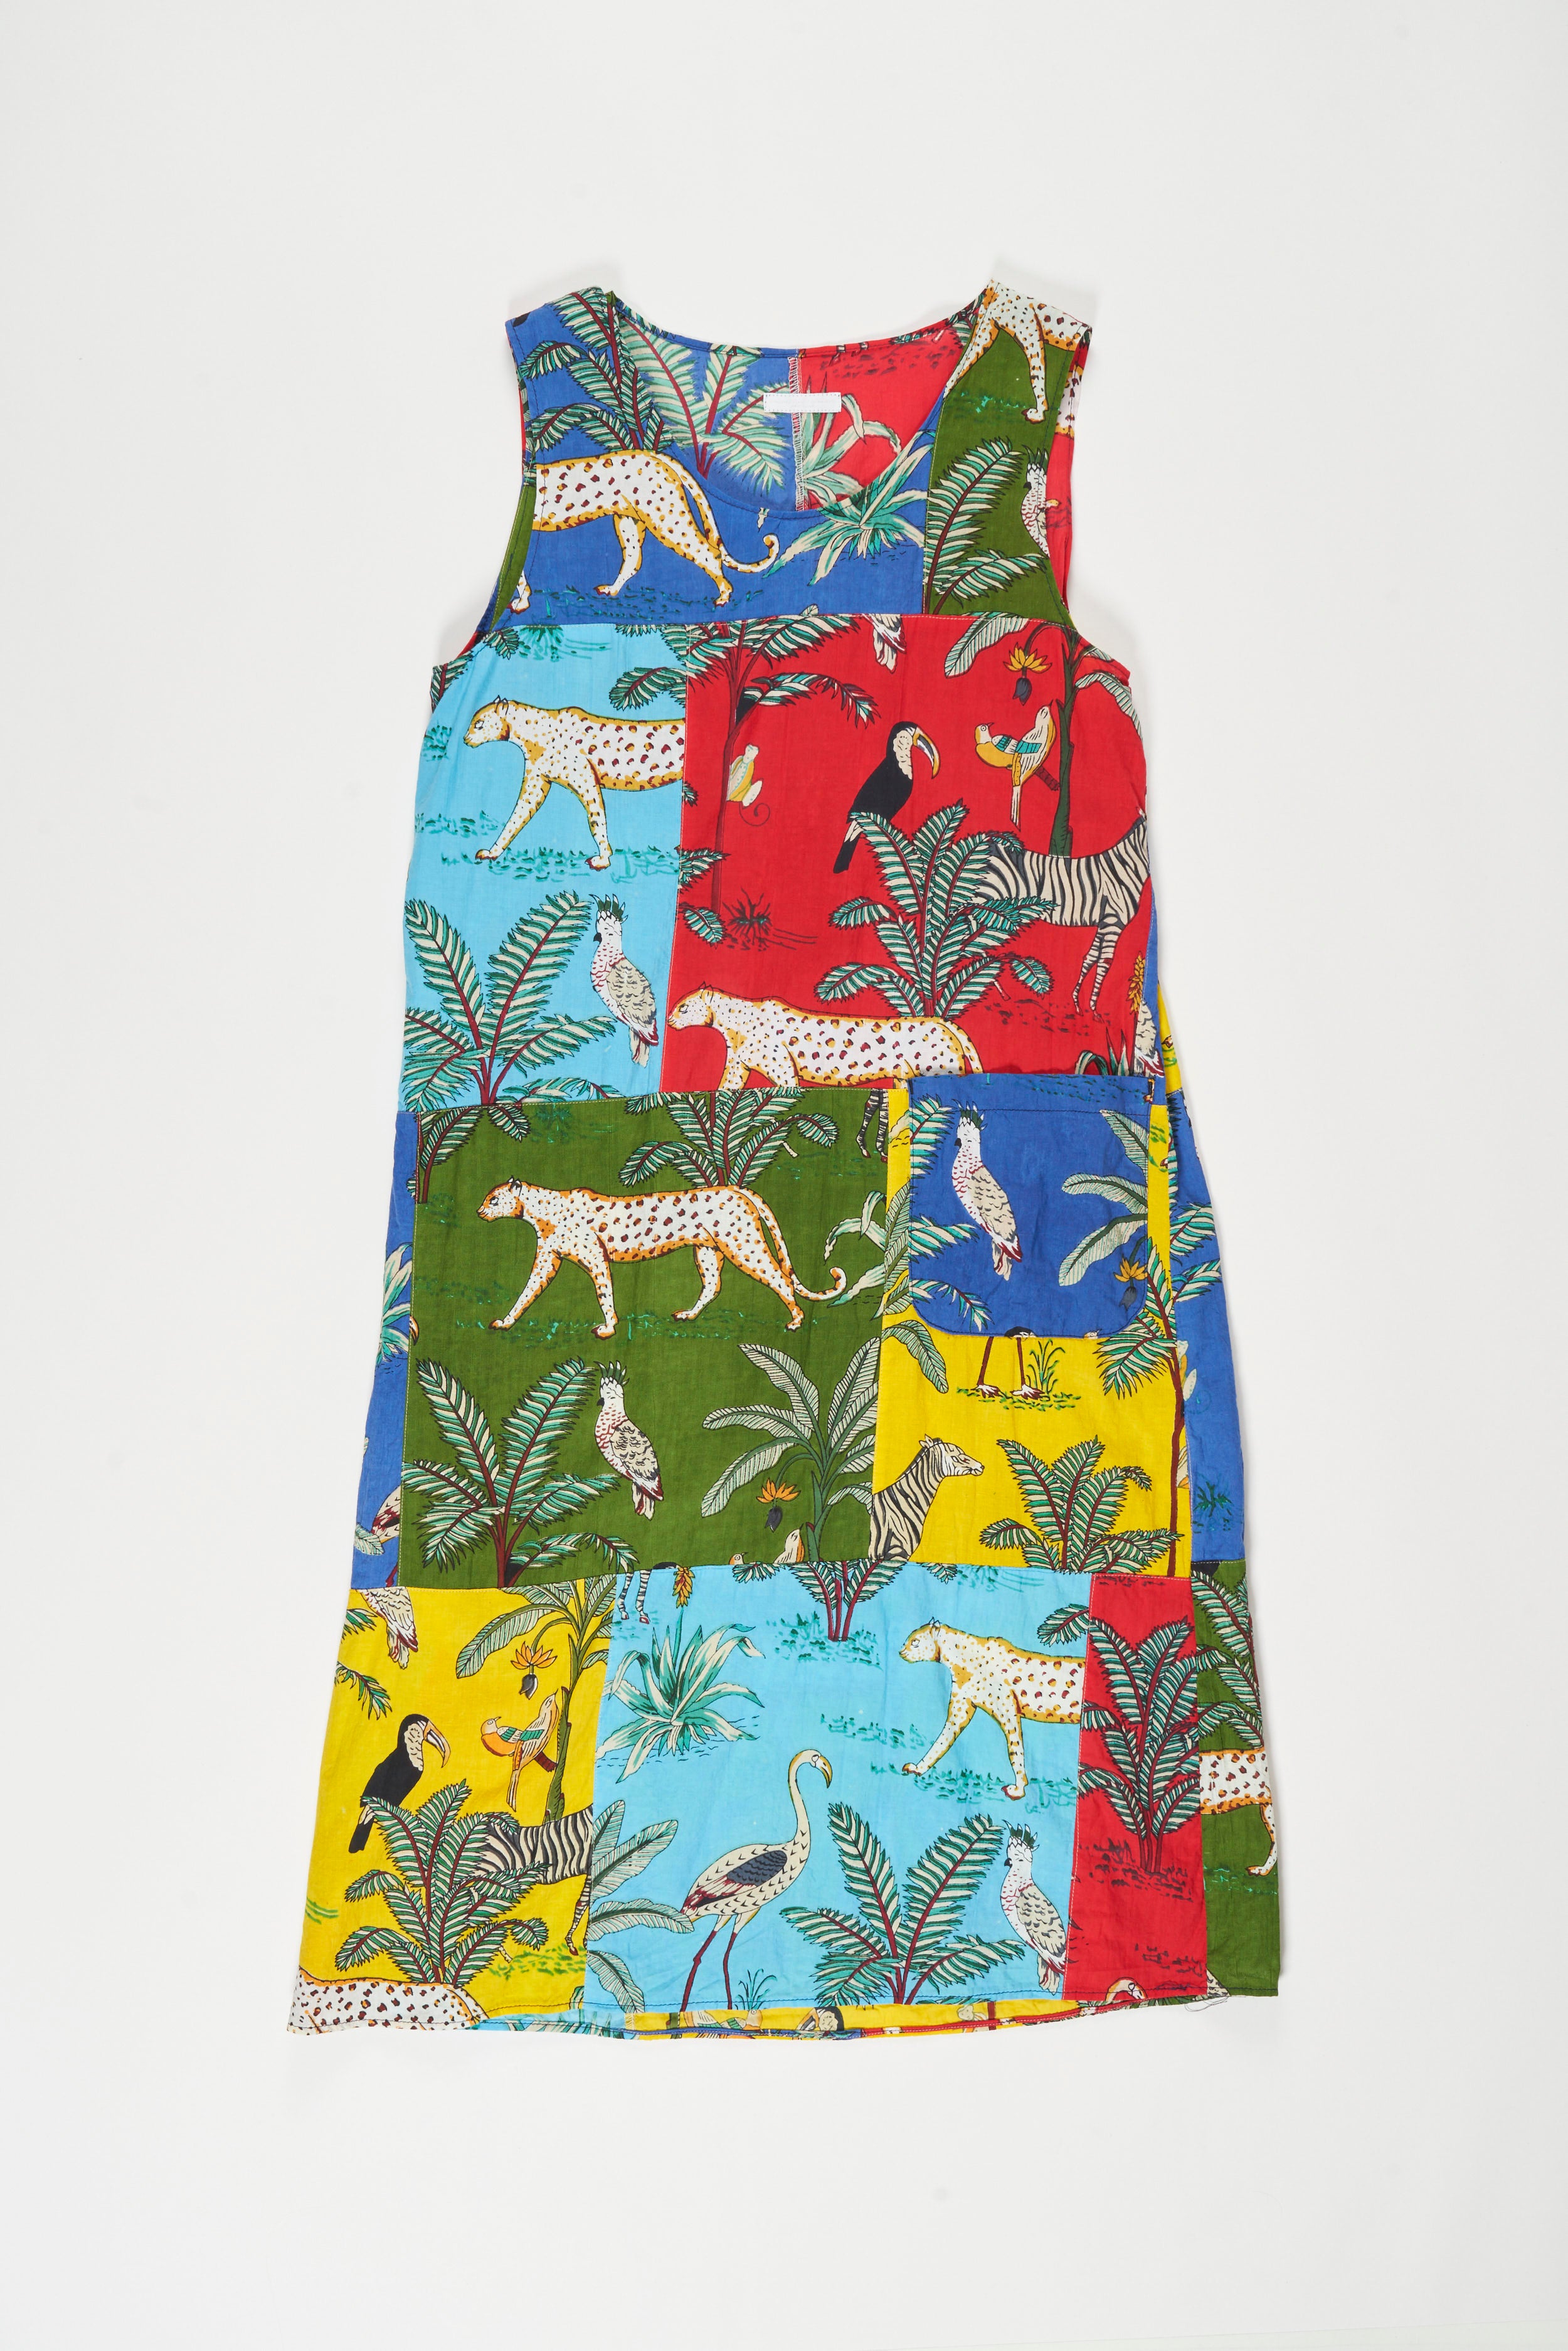 Wrap Vest Dress - Multi Color Animal Print Patchwork